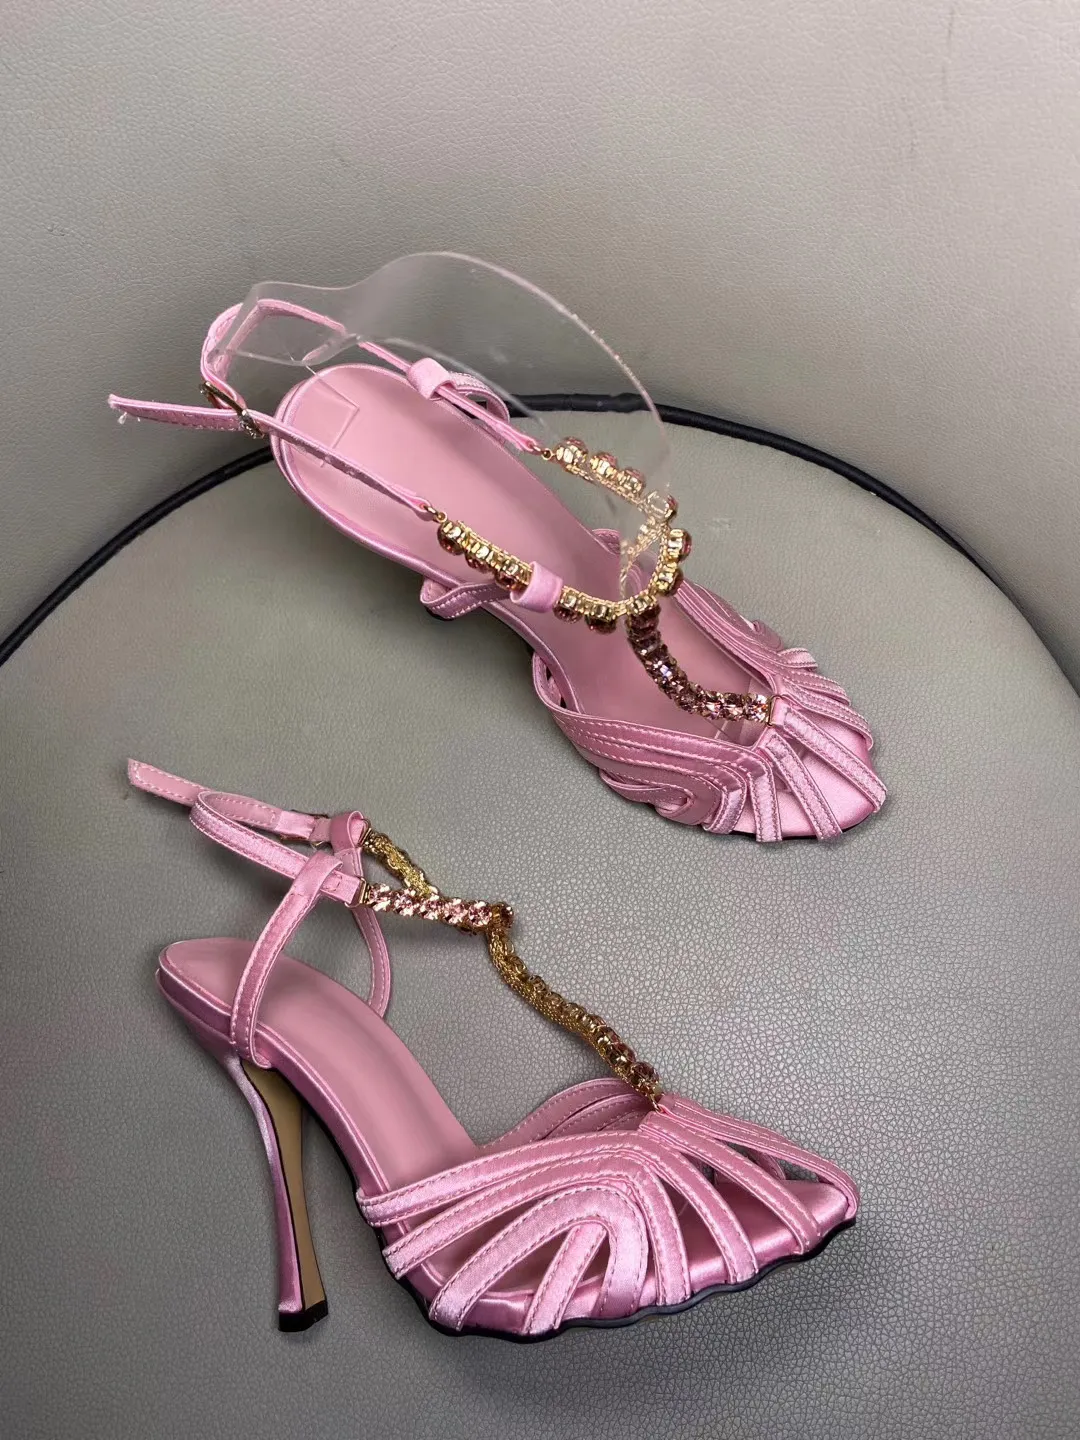 Sandálias de diamante de verão de marca famosa 2020 femininas com tiras no tornozelo e salto alto feminino gladiador sandálias desfile de moda sapatos de festa sapatos de casamento